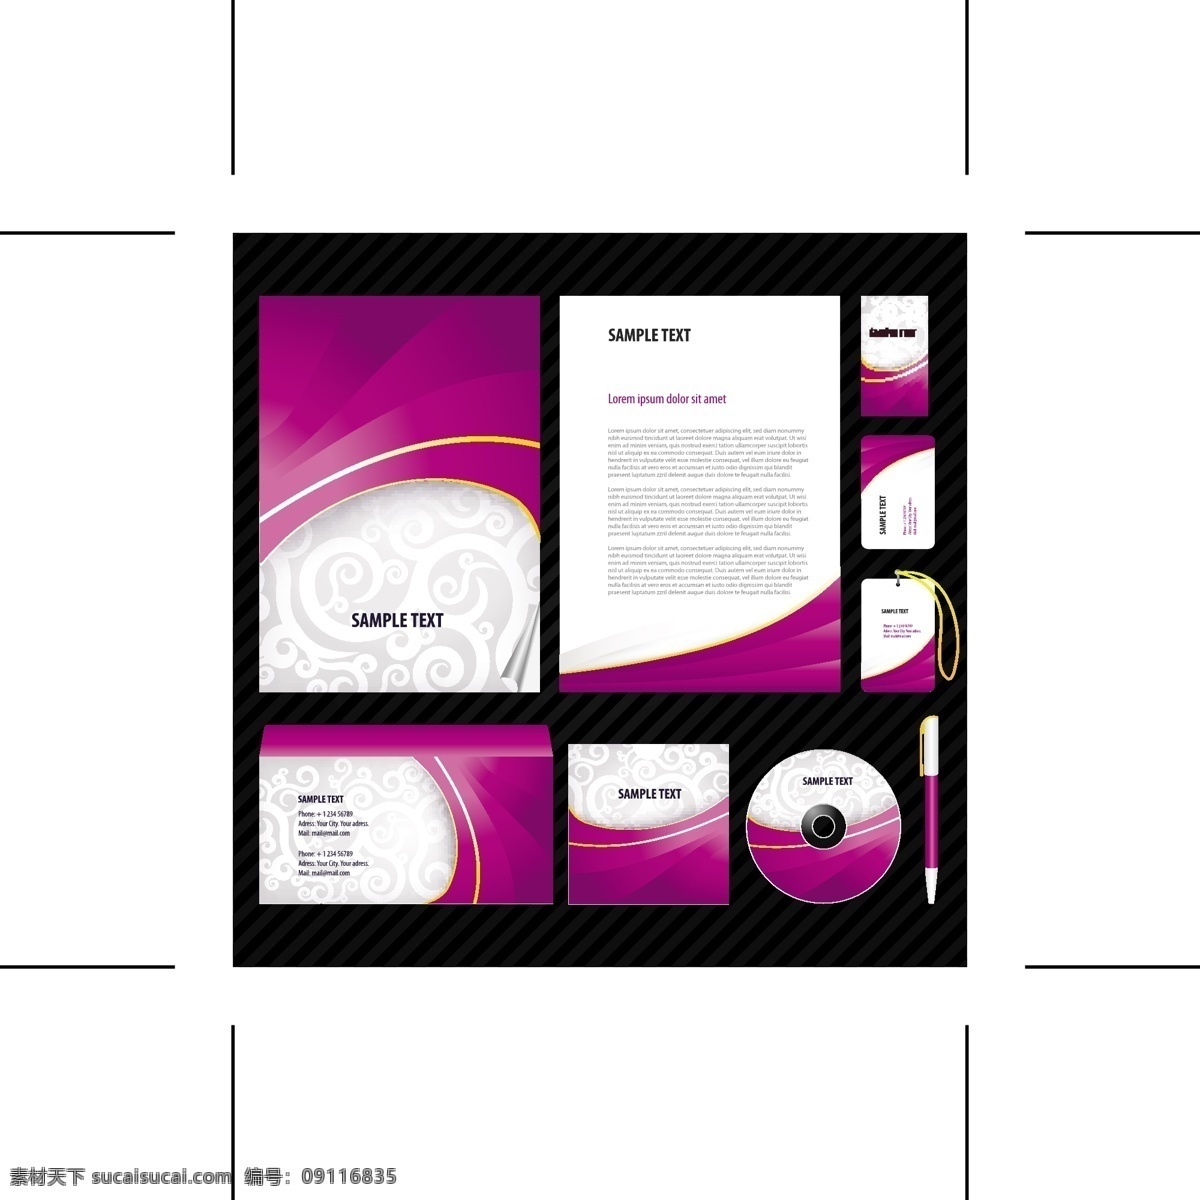 vi素材 设计素材 画册模板 平面模板 矢量图库 白色